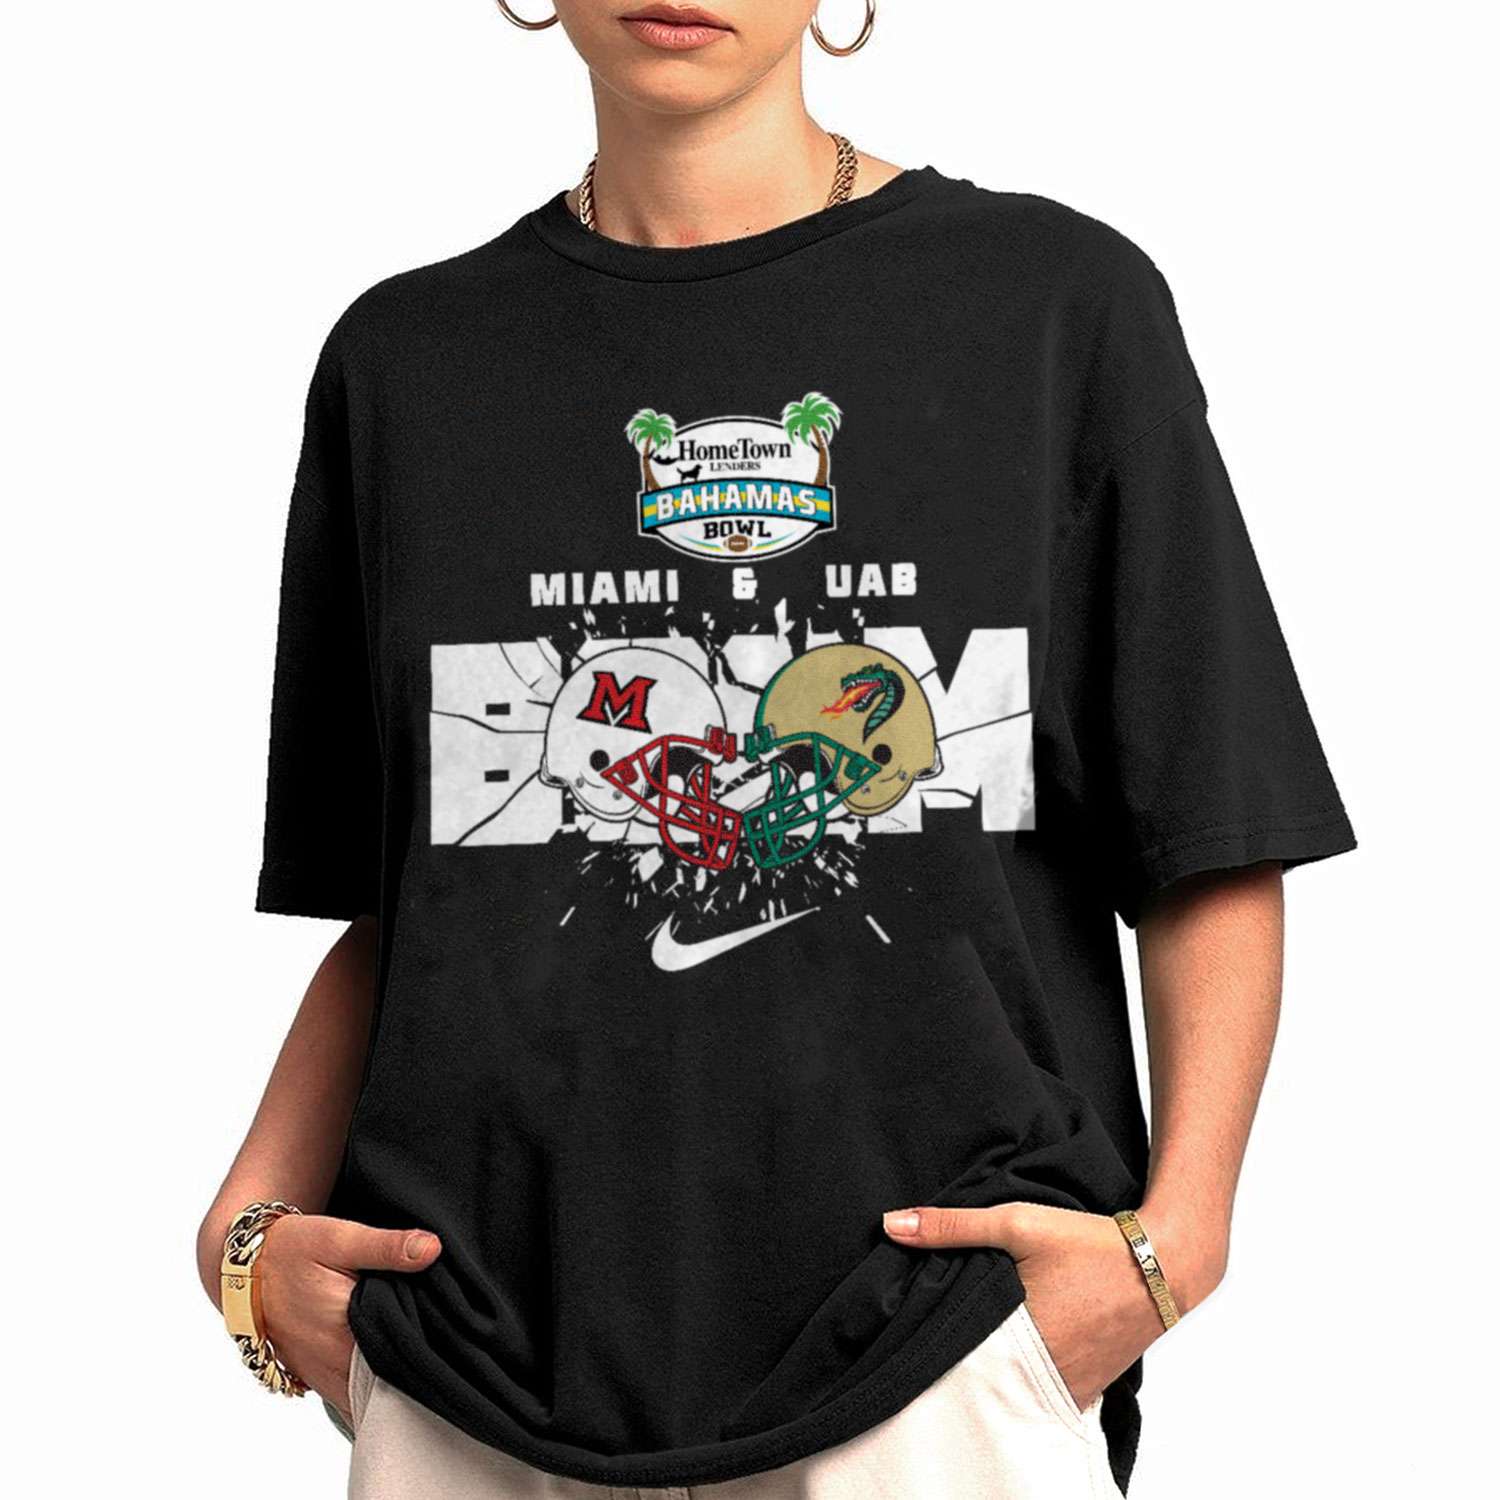 Miami And UAB Boom Helmet Home Town Lenders Bahamas Bowl T-Shirt